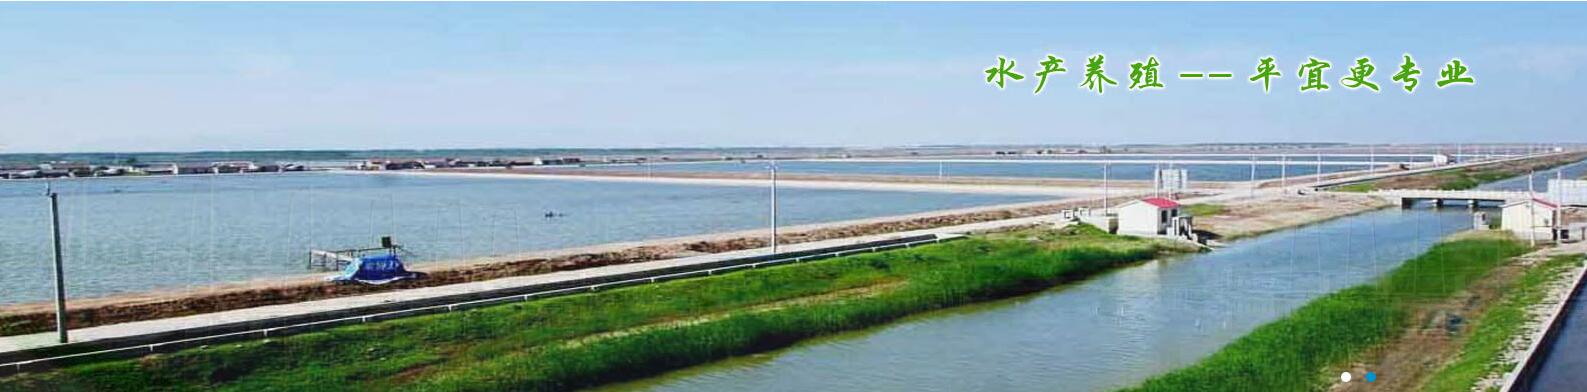 马龙县河滩养殖有限公司